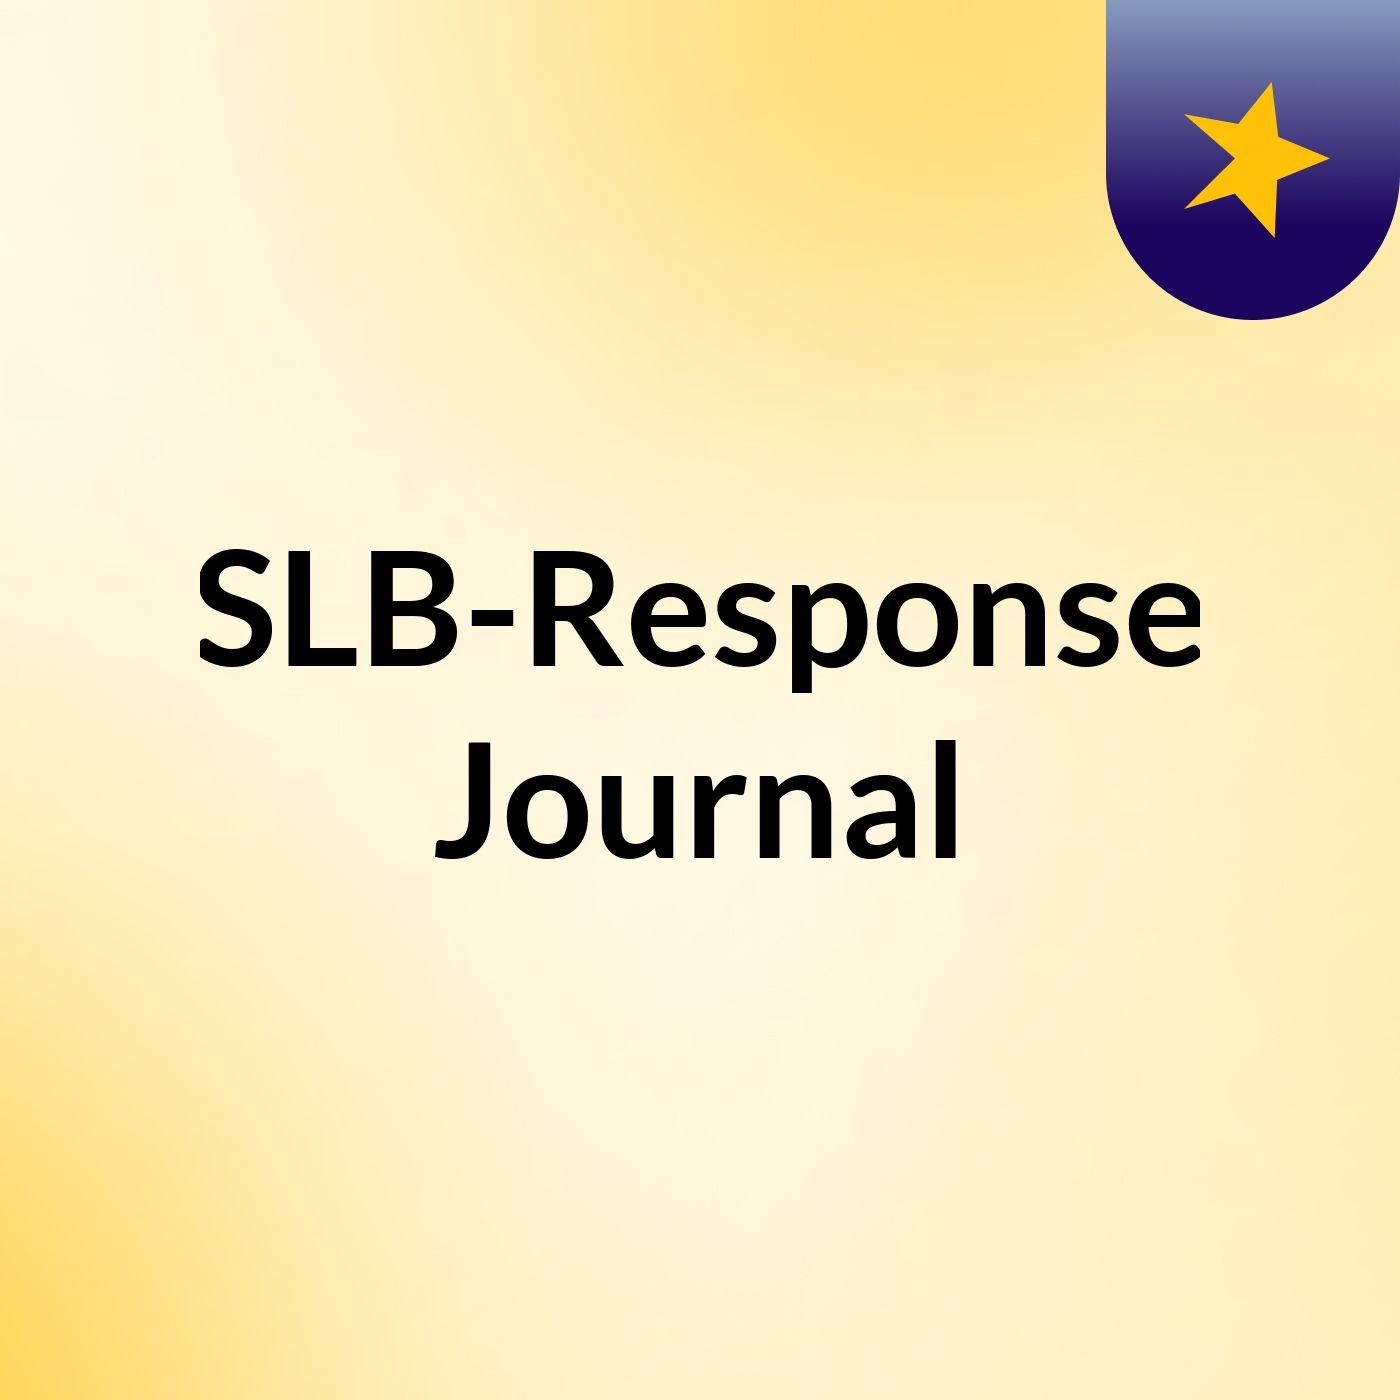 Episode 7 - SLB-Response Journal